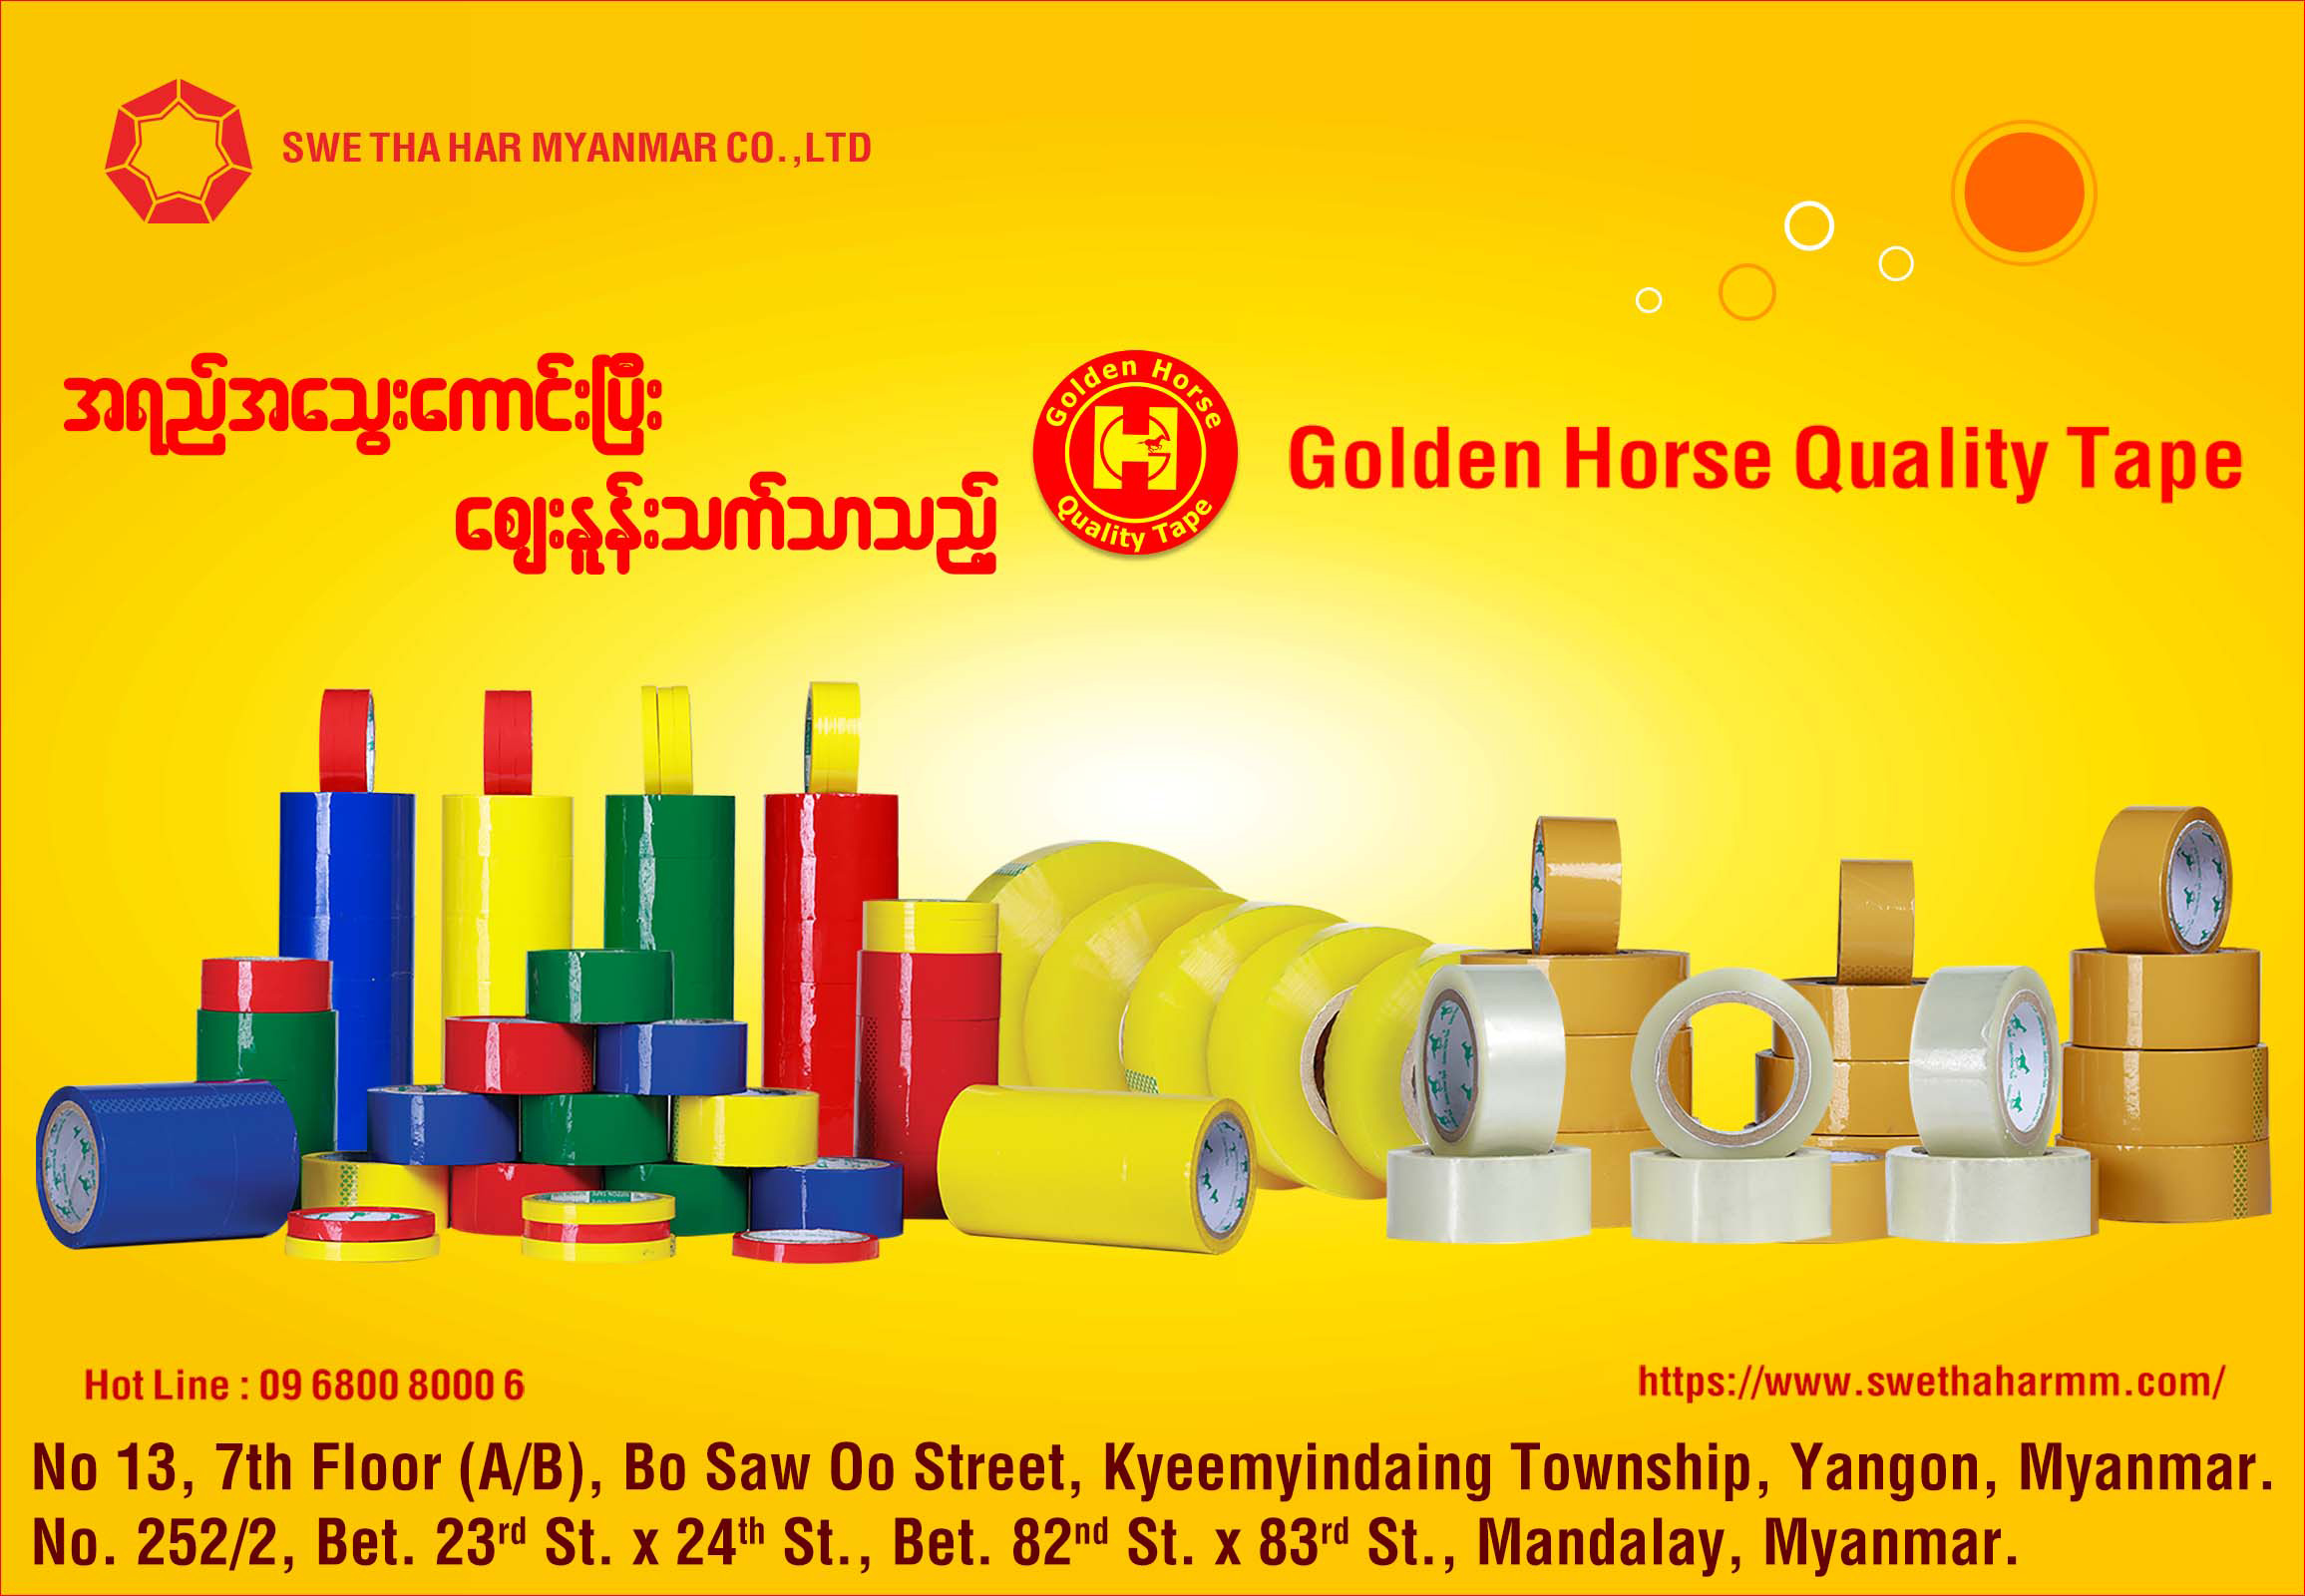 Swe Tha Har Myanmar Co., Ltd. (Golden Horse Quality Tape)